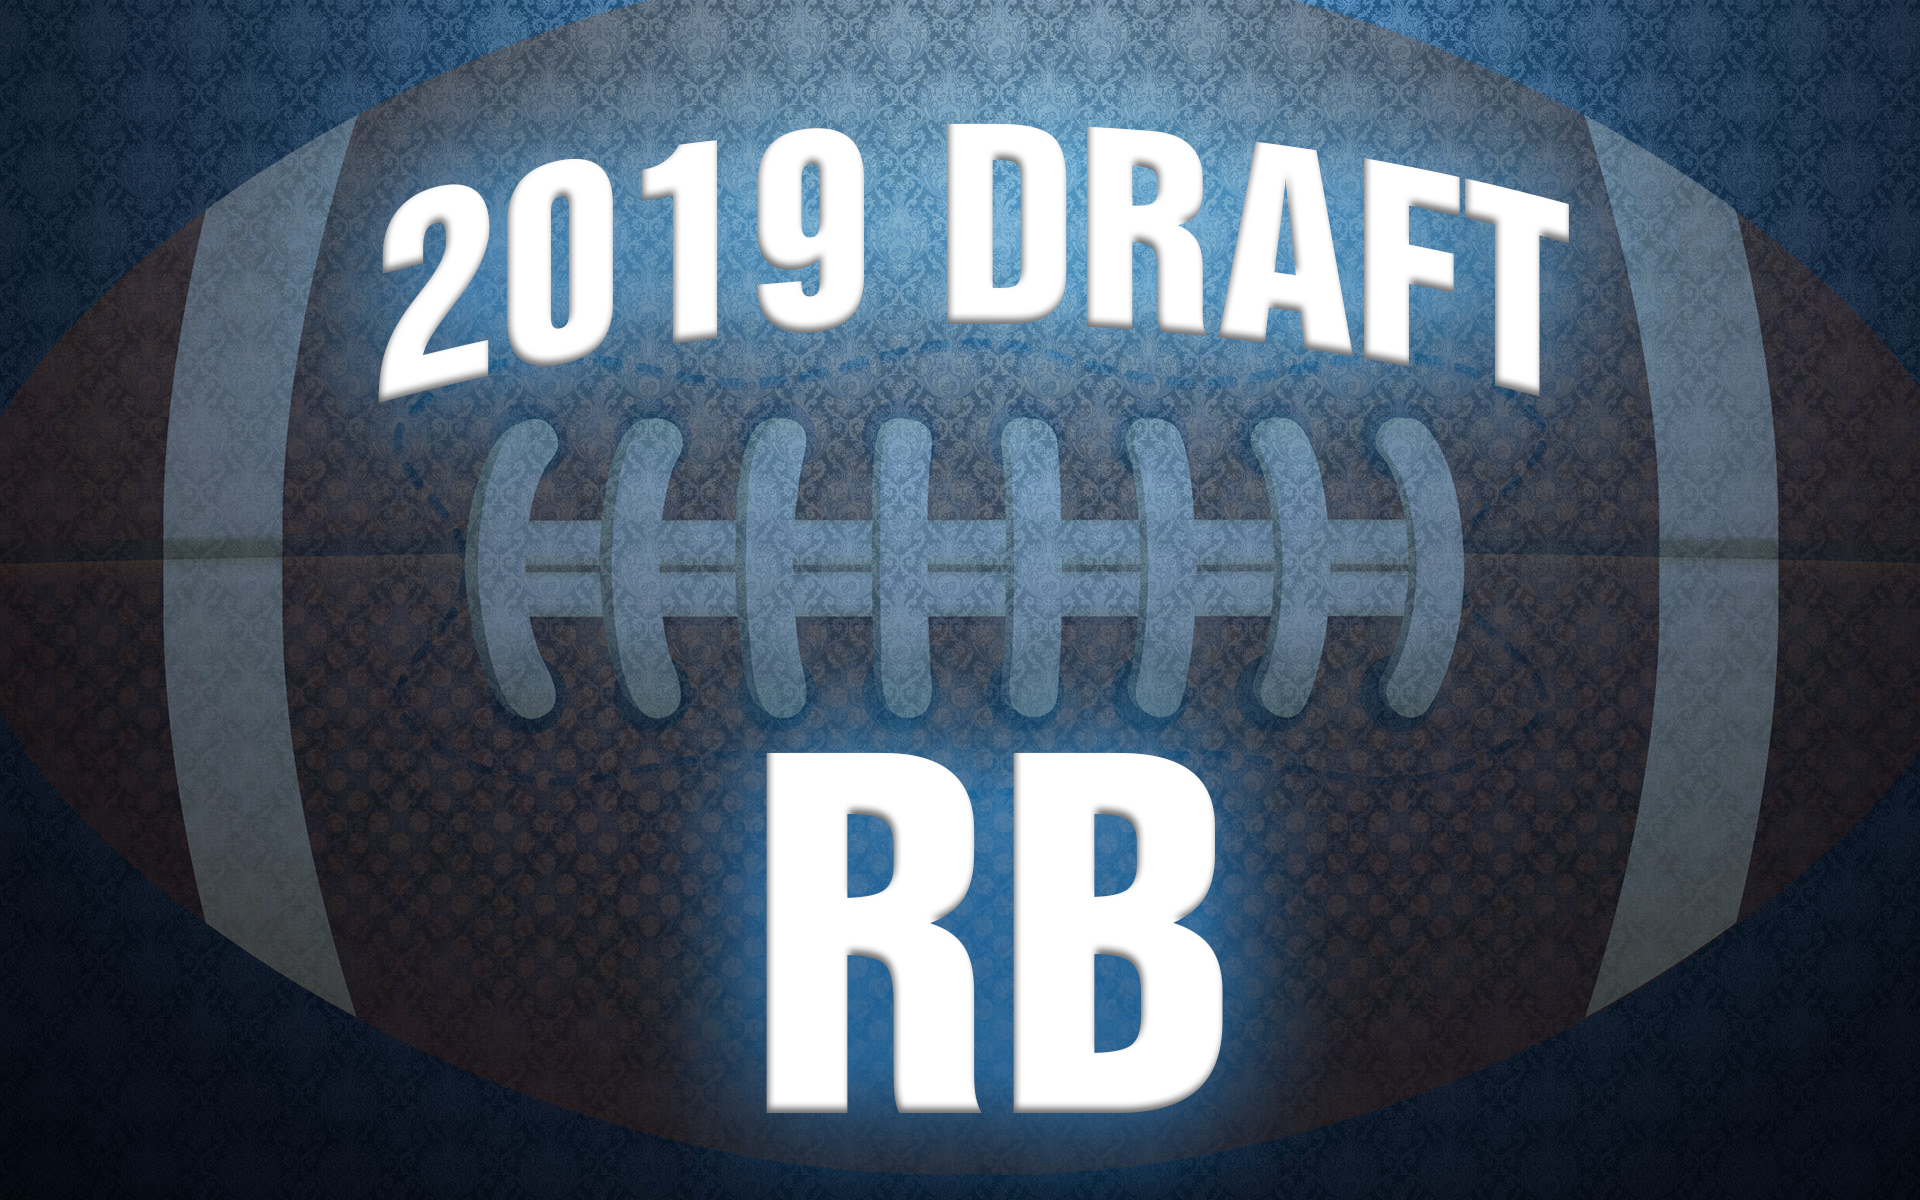 NFL Draft running back rankings 2019